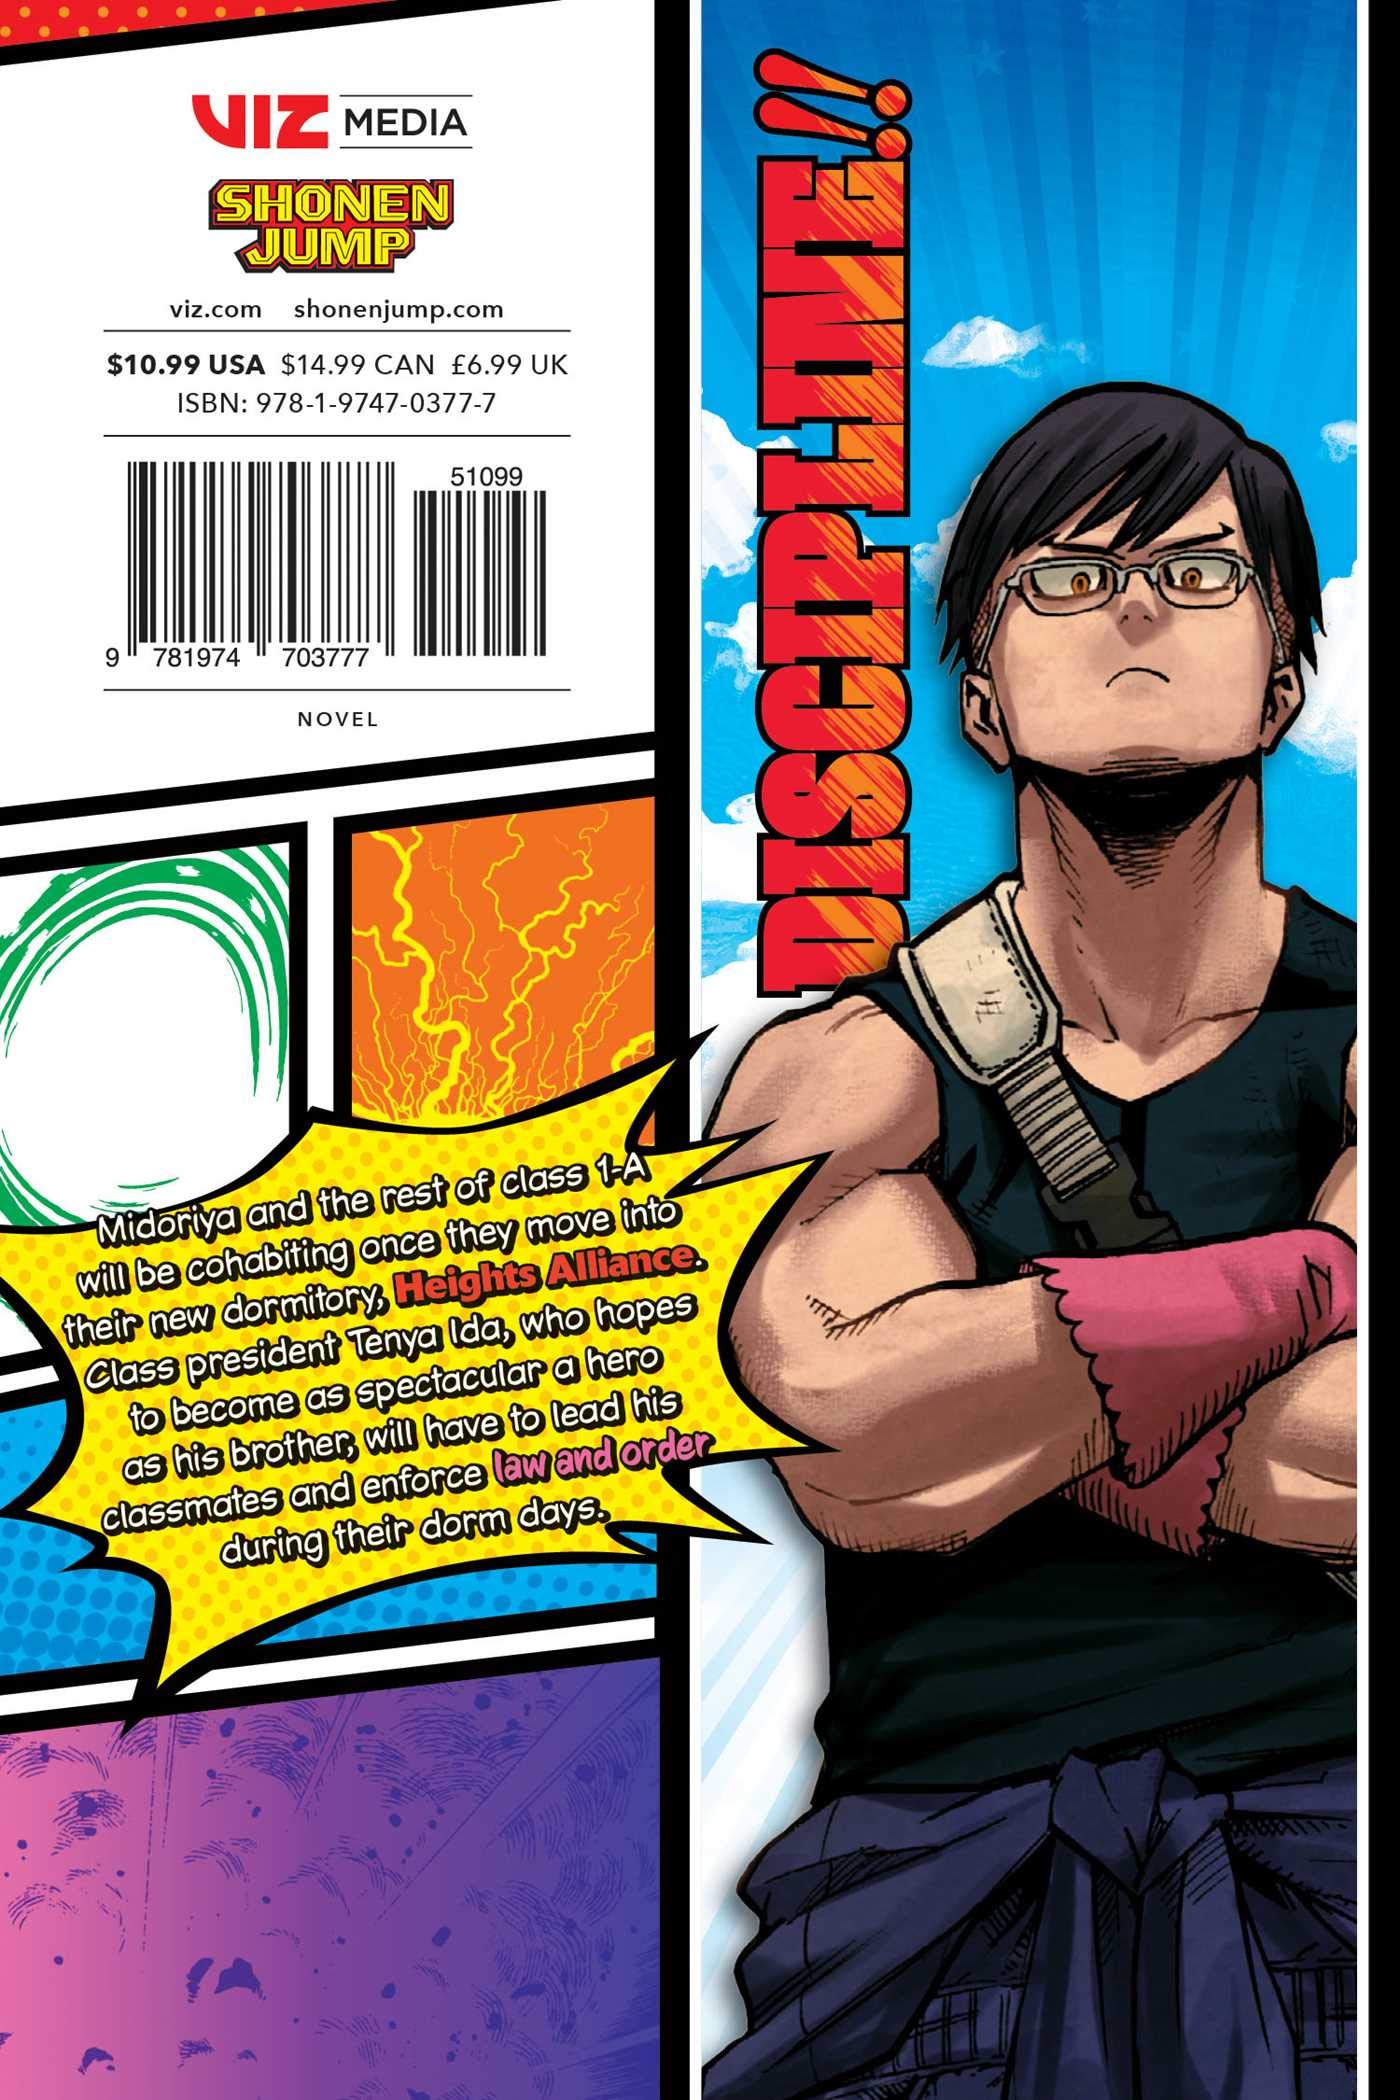 My Hero Academia: School Briefs - Volume 3 | Anri Yoshi, Kohei Horikoshi